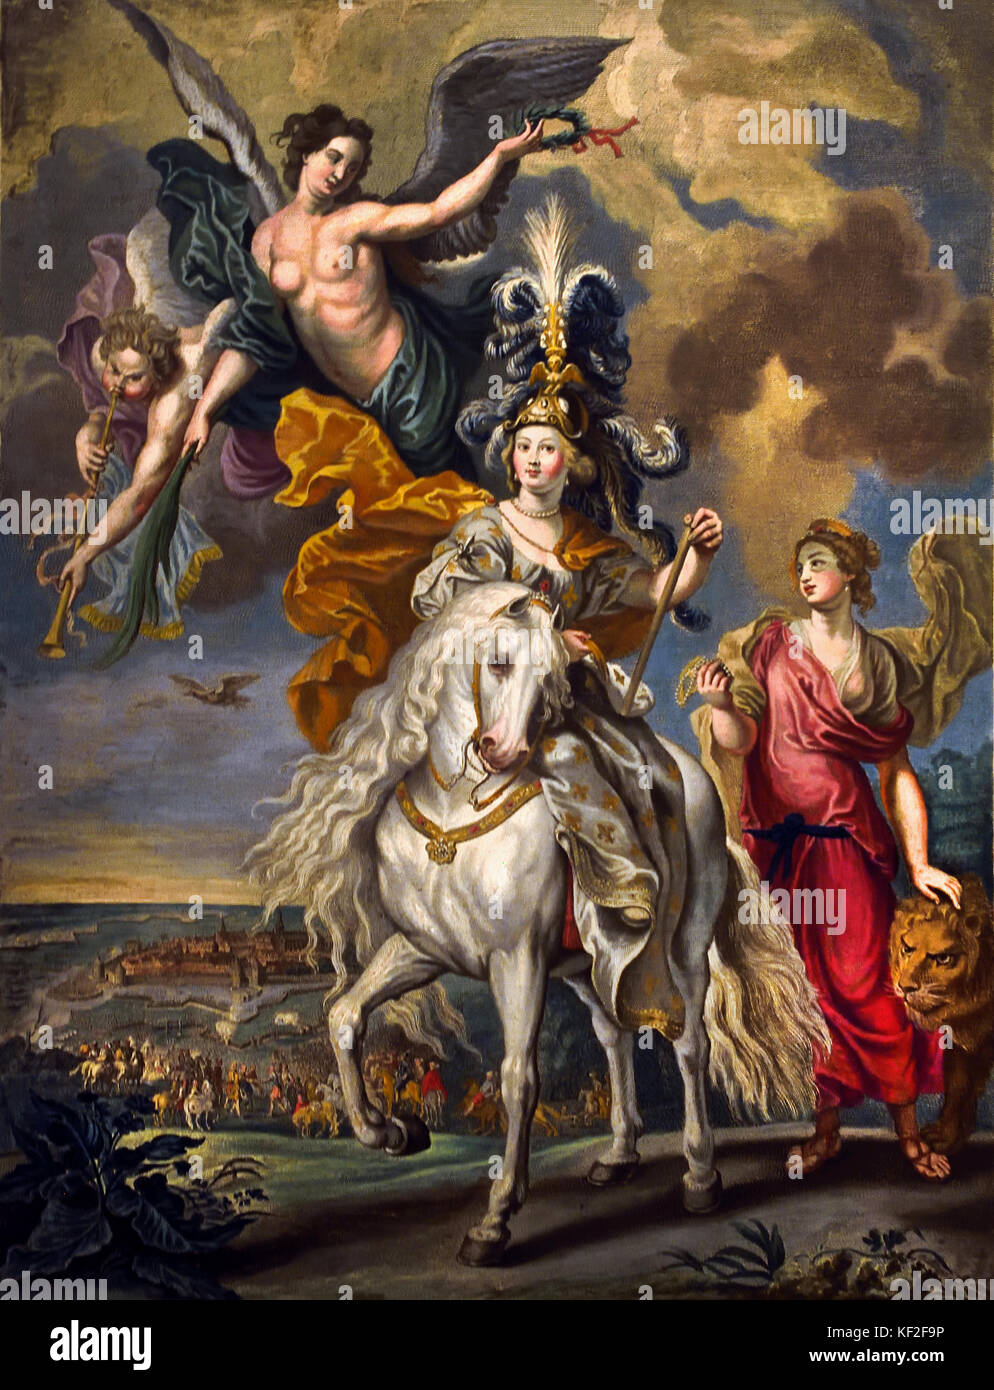 Das Regent Militante - der Sieg in Jülich - die Marie de Medici-Zyklus von Peter Paul Rubens, Belgien (Witwe von König Heinrich IV. von Frankreich) Stockfoto